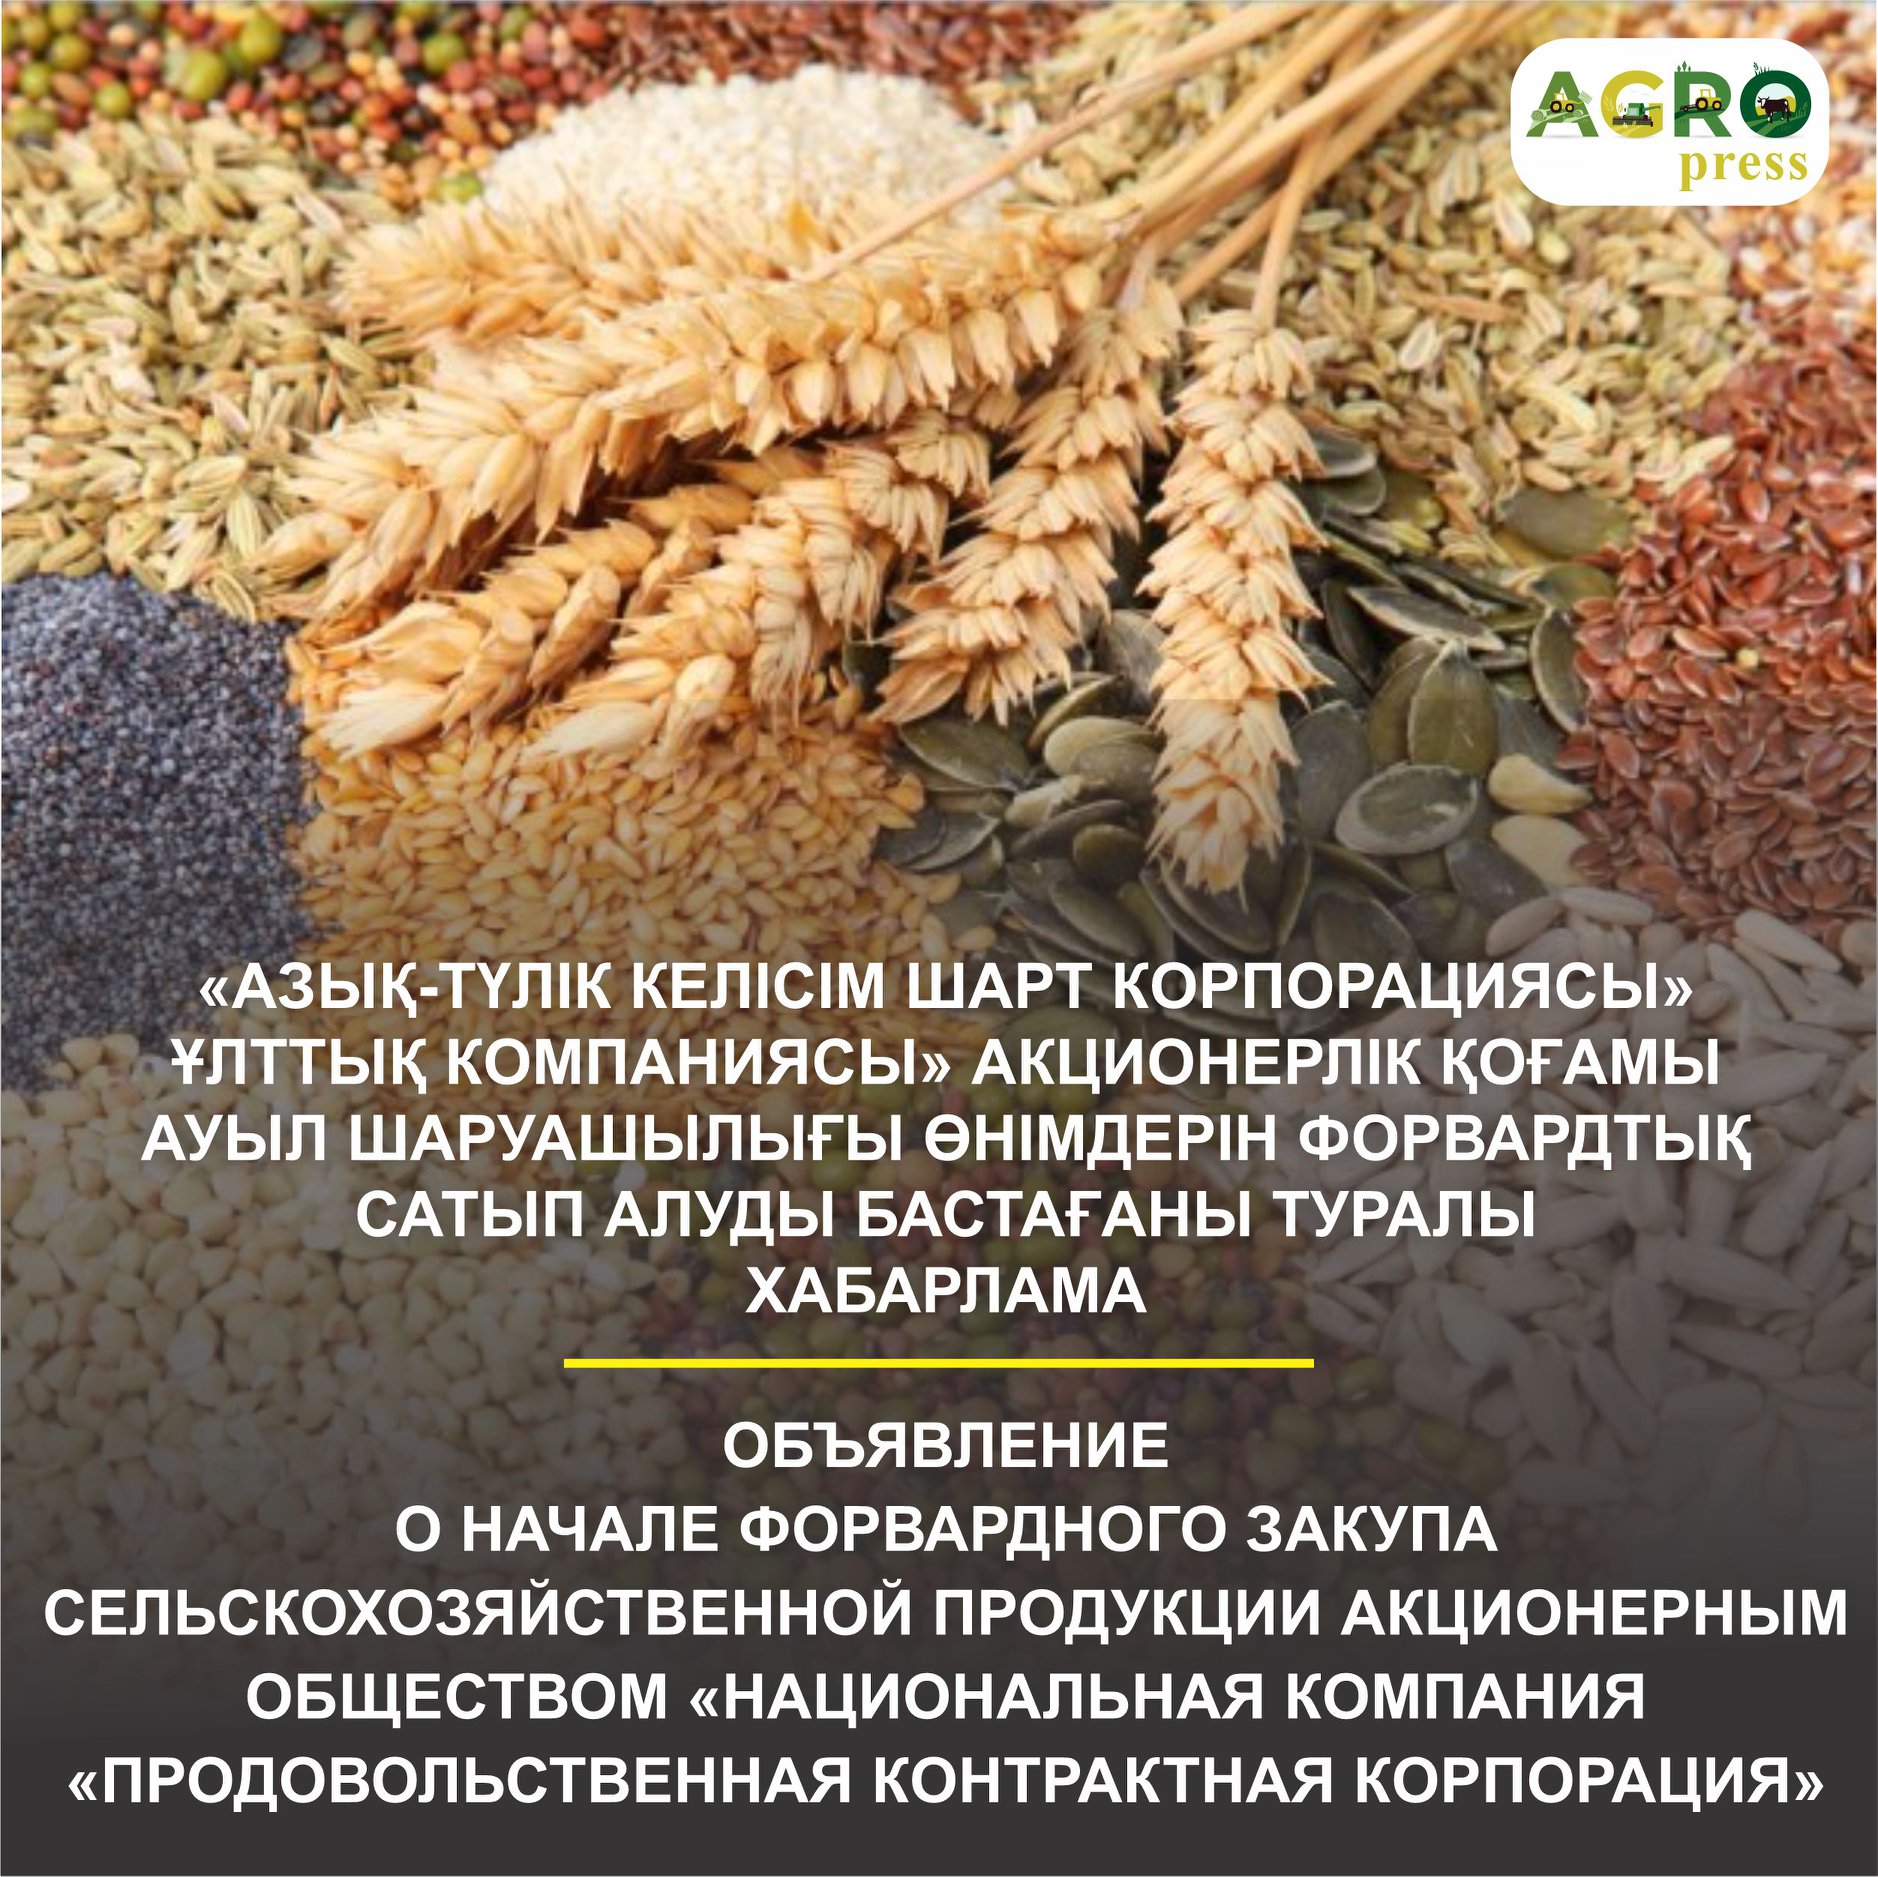 В Казахстане стартовал форвардный закуп сельскохозяйственной продукции